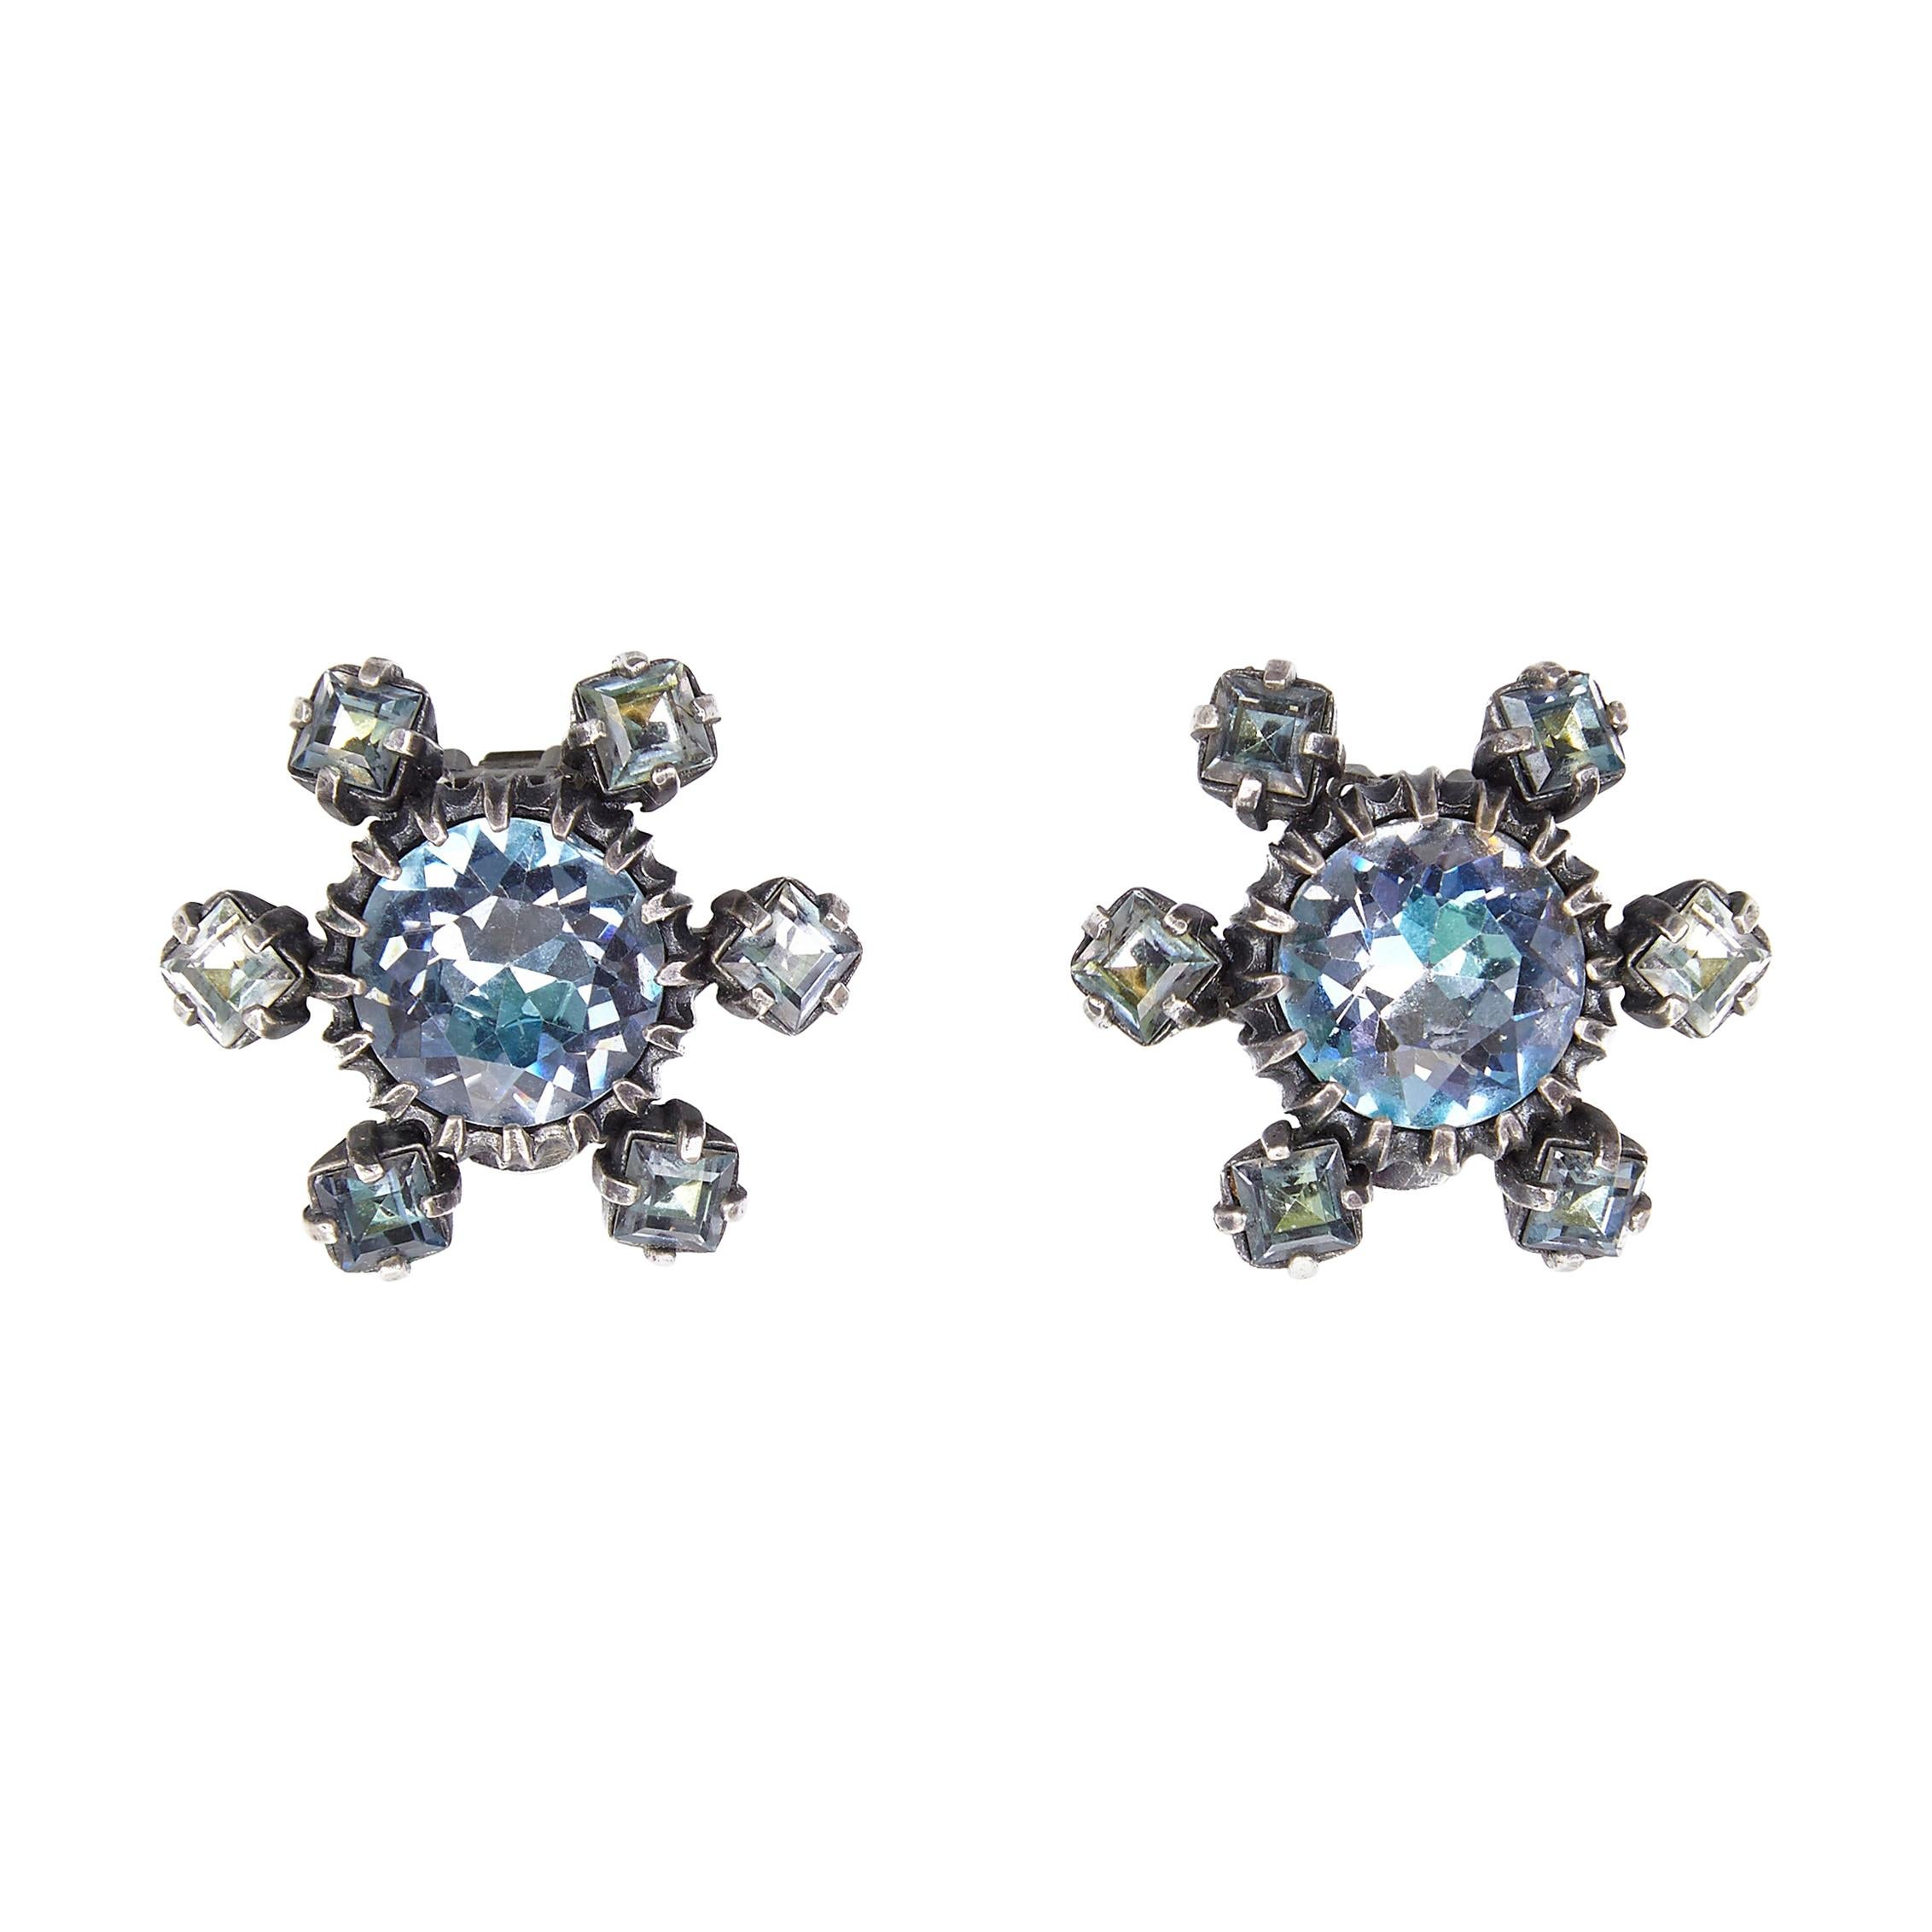 Christian Dior Blaue Kristall-Ohrringe aus den 1950er Jahren